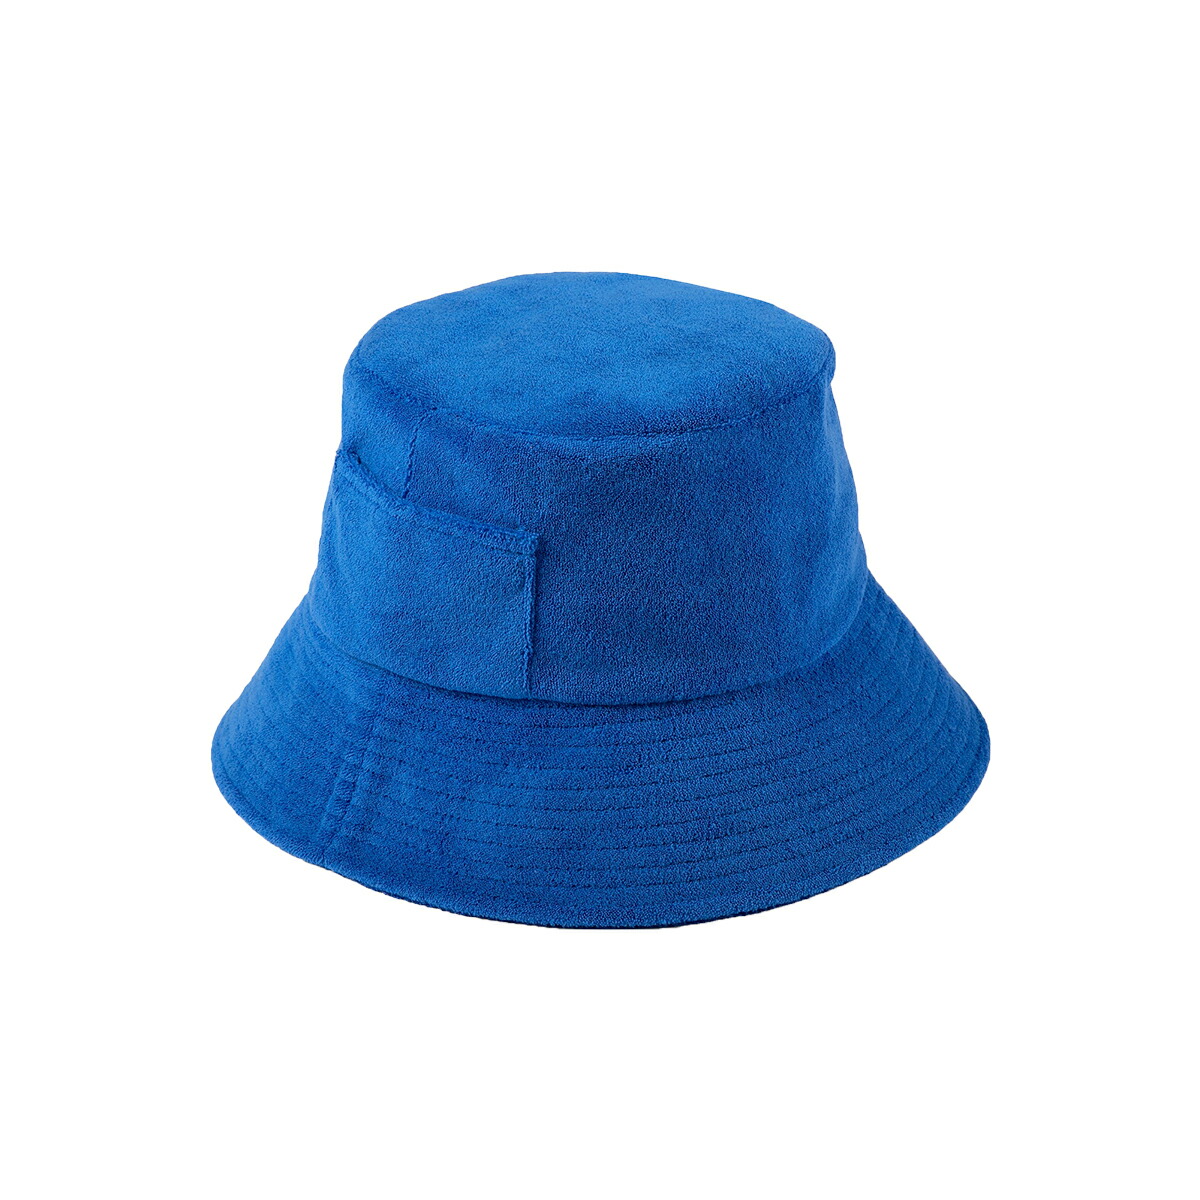 バケットハット レディース メンズ ユニセックス ラック ラックオブカラー Lack of Color UVカット Wave Bucket Terry  UPF50+ 帽子 紫外線対策 ポケット付き